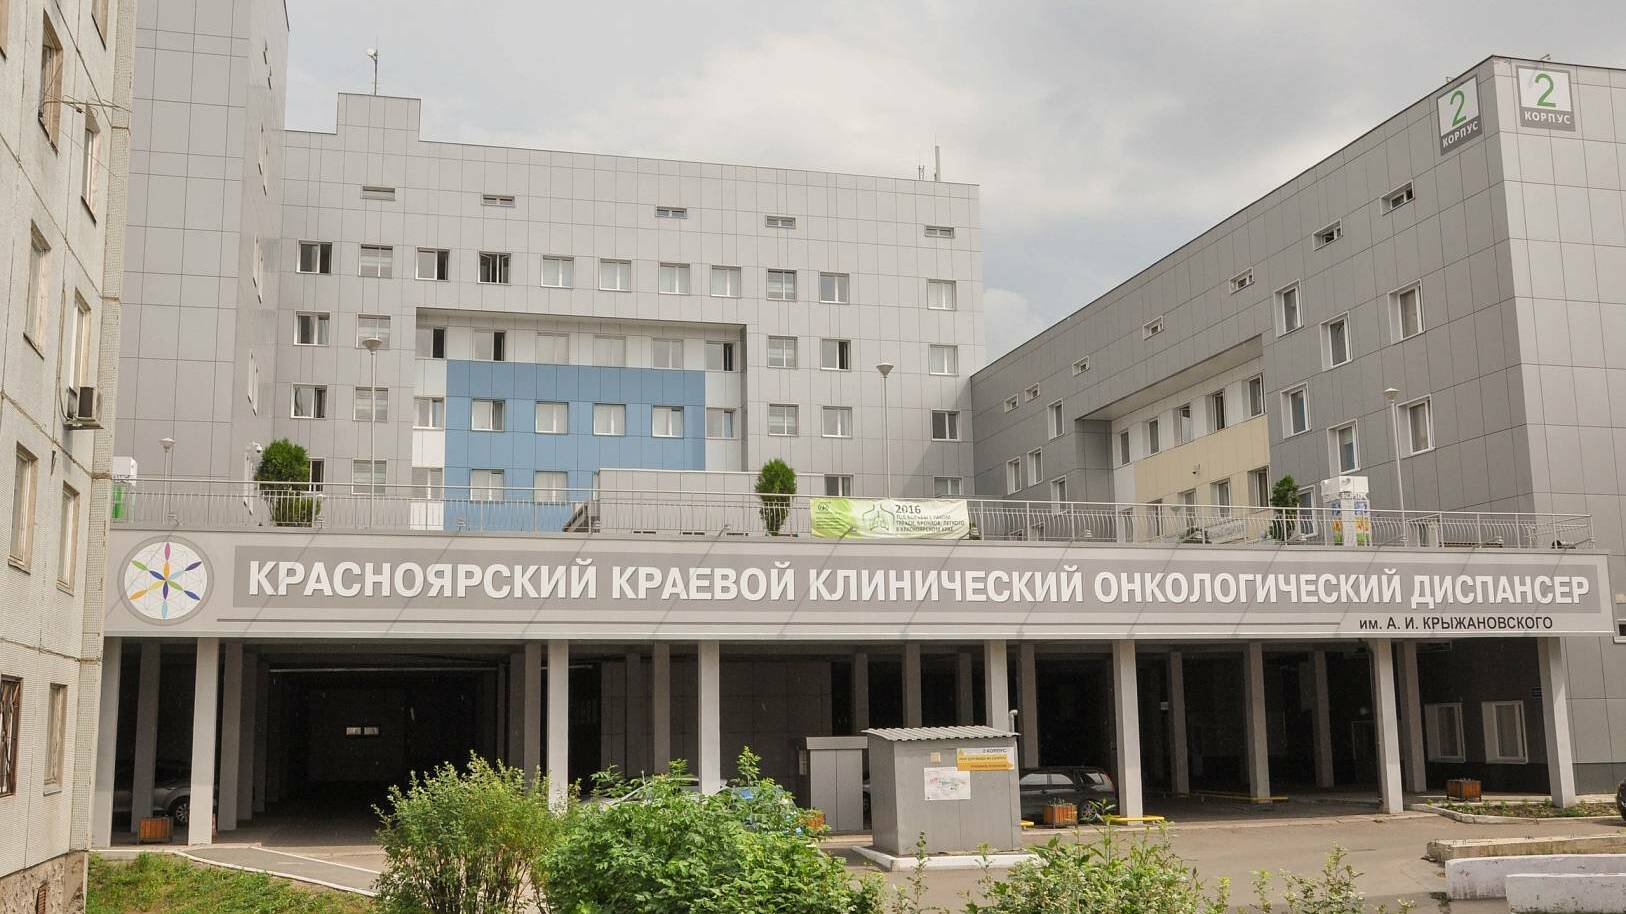 1,7 тысячи умерших за год: стала известна статистика по онкологии в Красноярском крае